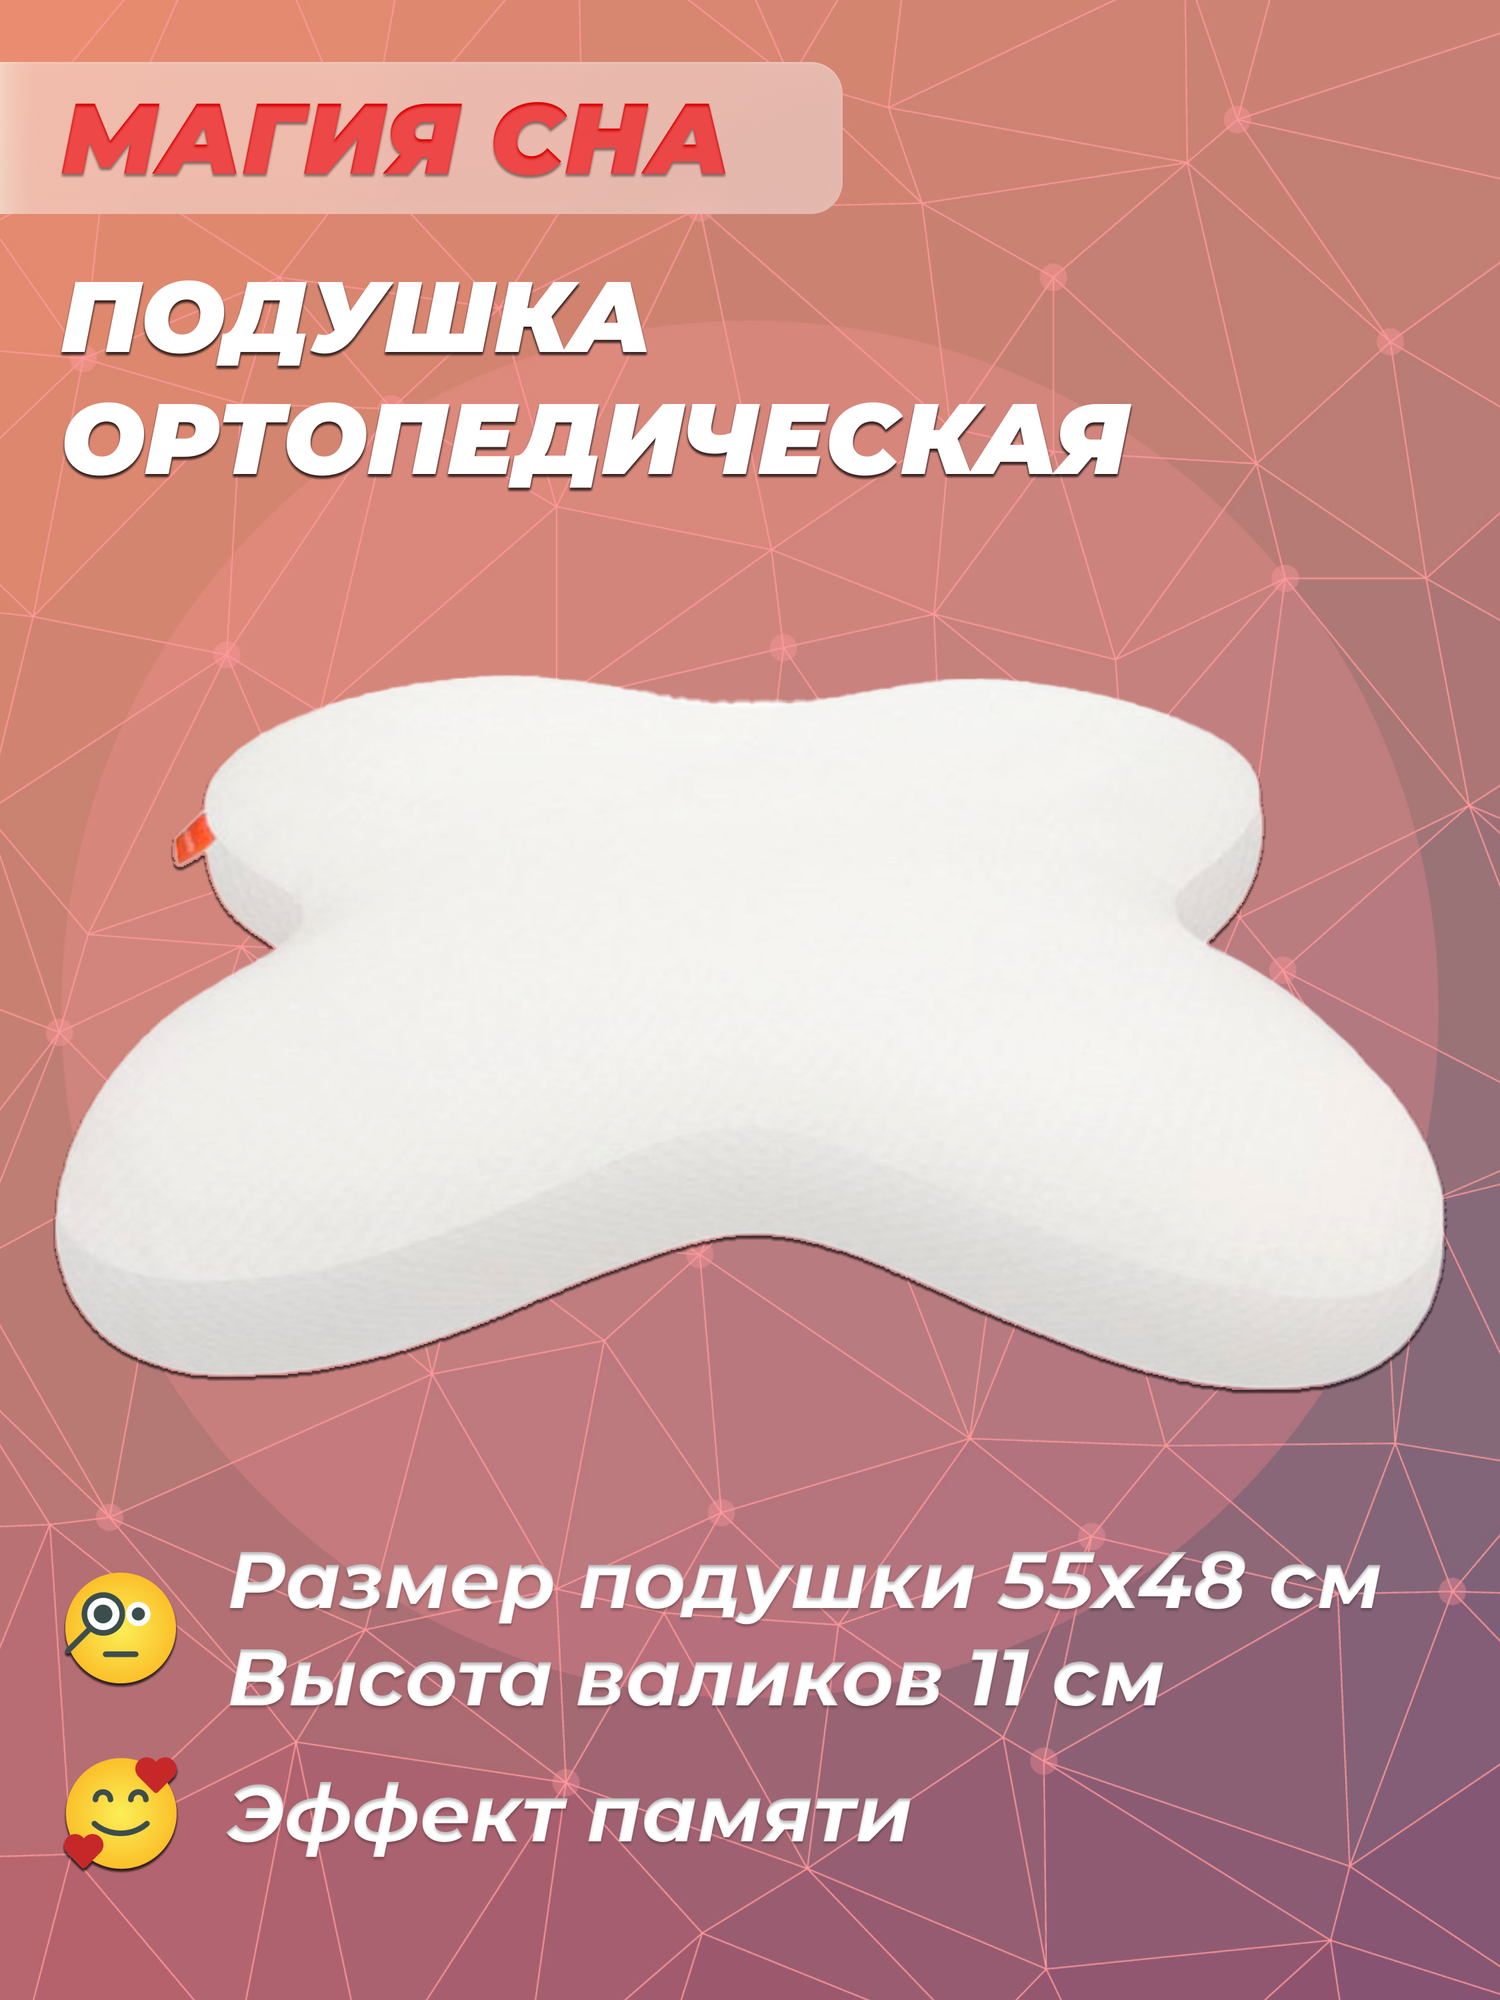 Подушка ортопедическая для сна с эффектом памяти для сна на животе Luomma LumF-516, 55x48x11 см